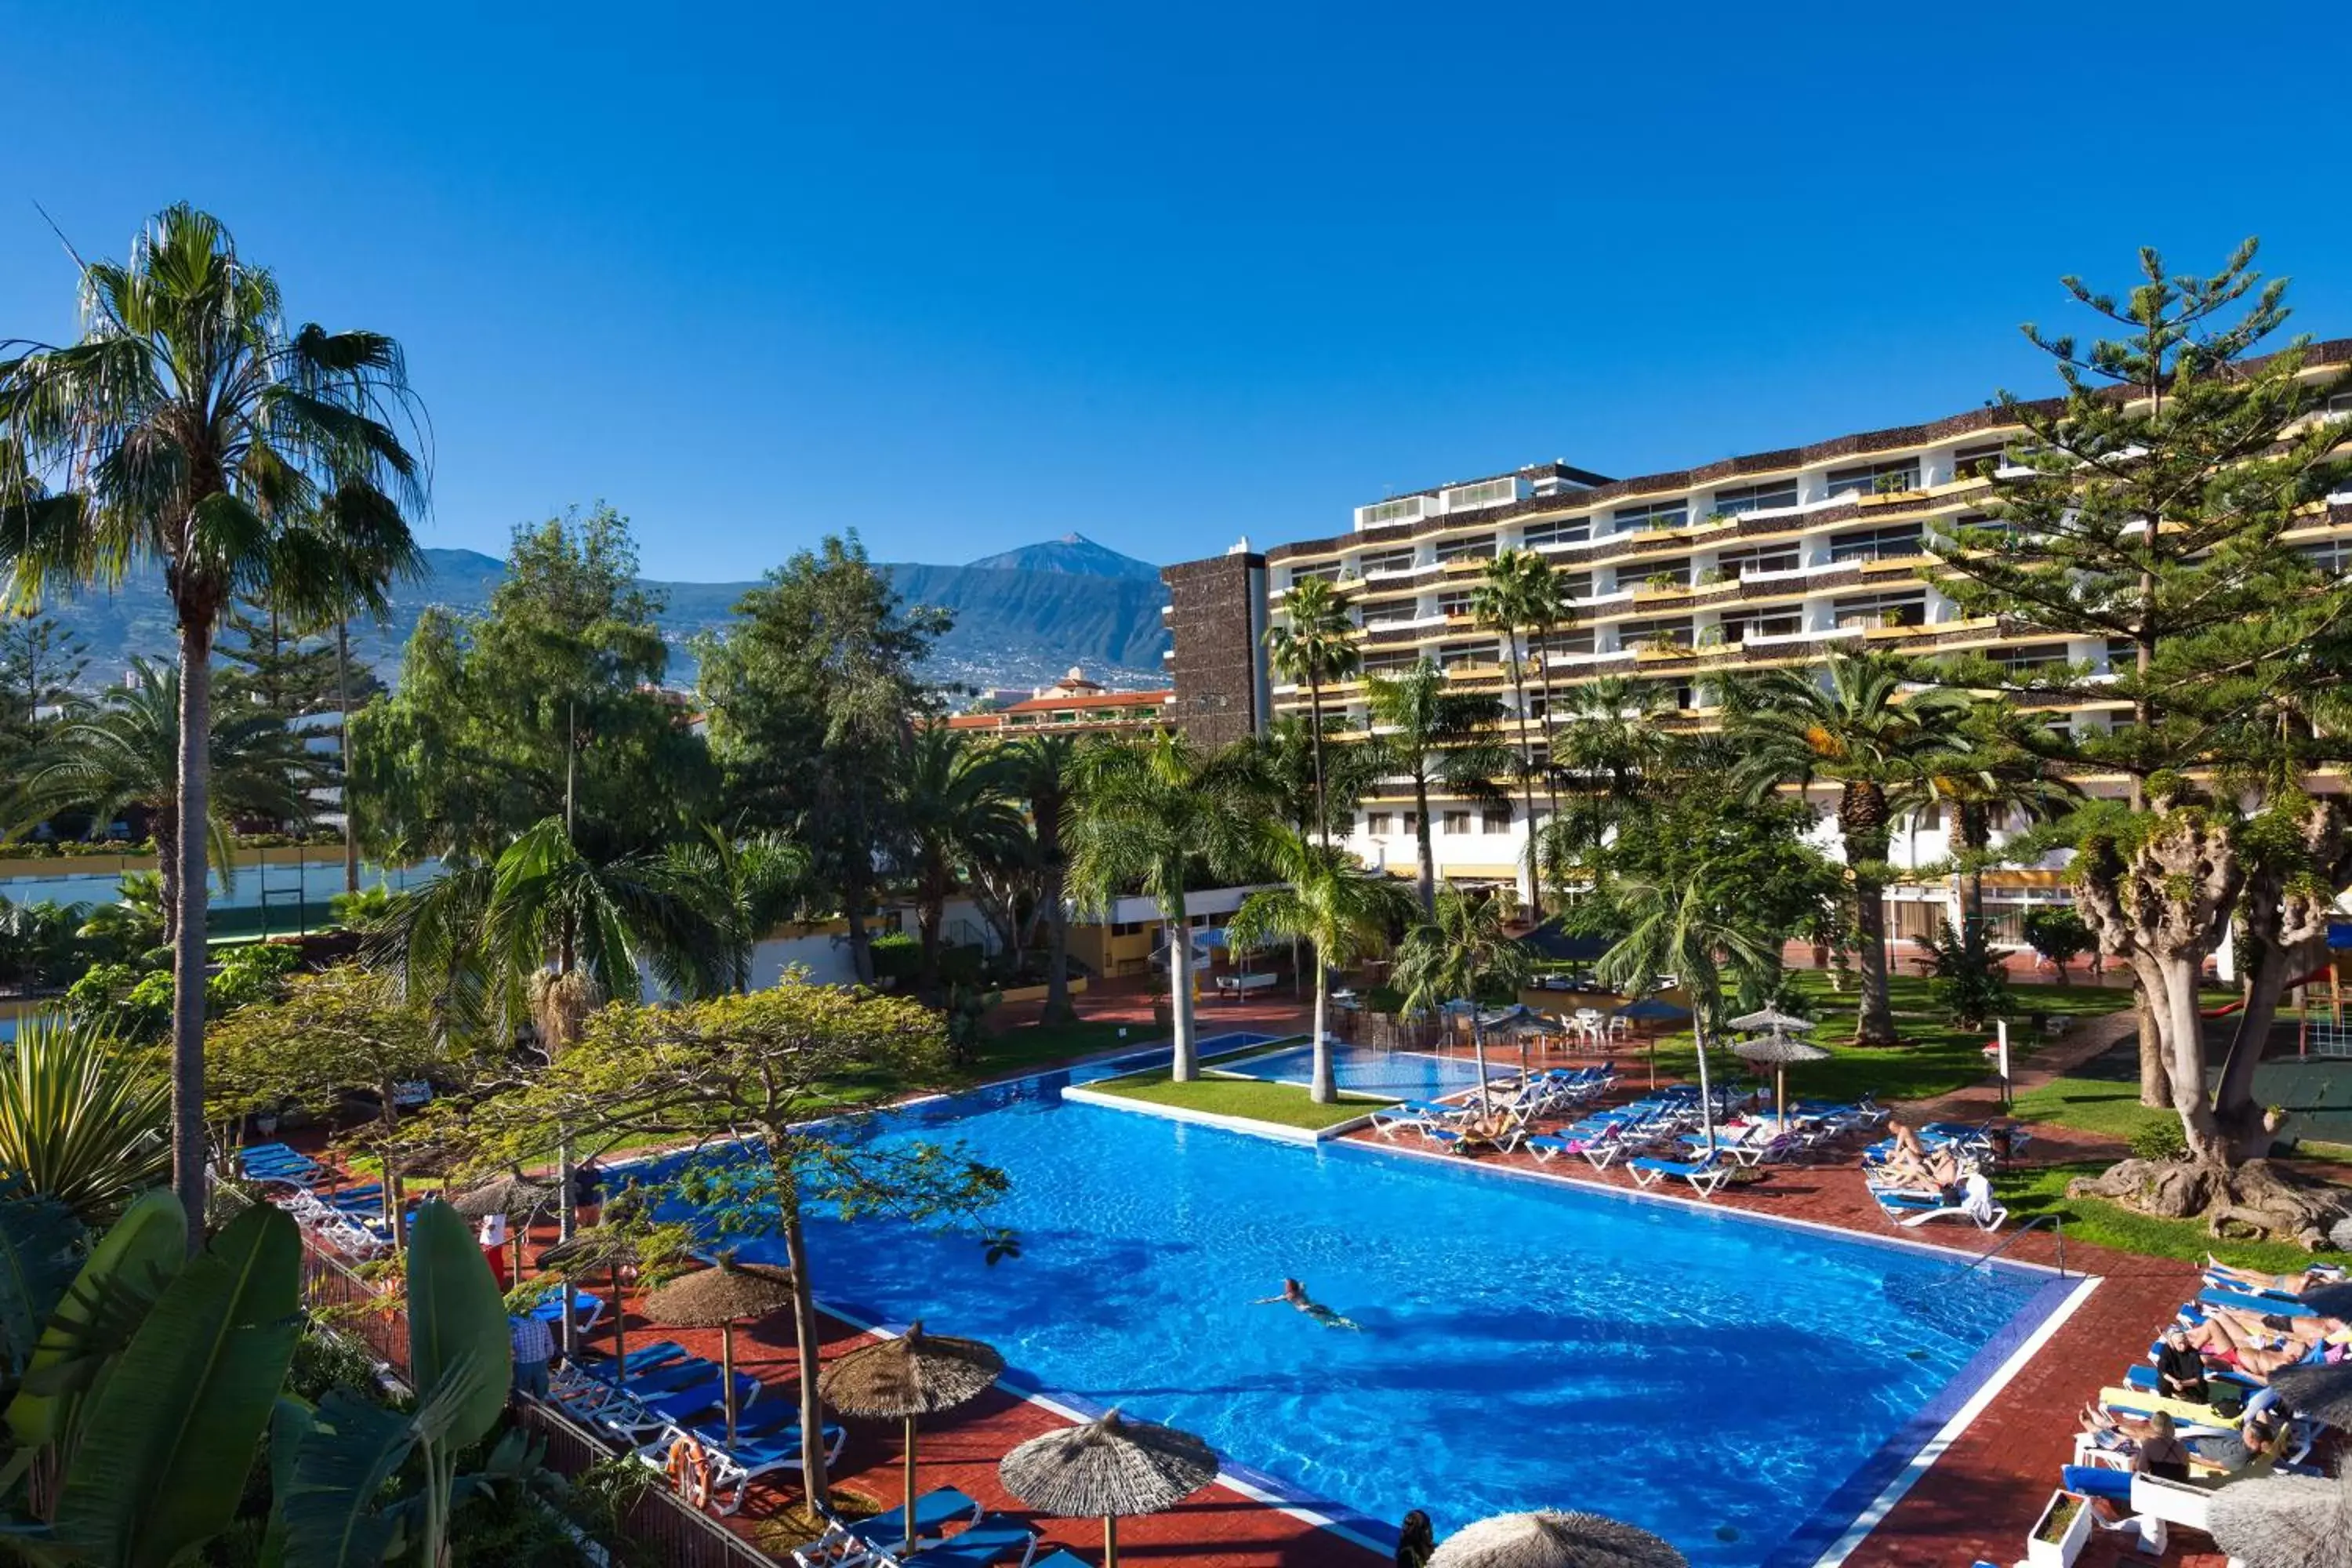 Property building, Swimming Pool in Complejo Blue Sea Puerto Resort compuesto por Hotel Canarife y Bonanza Palace